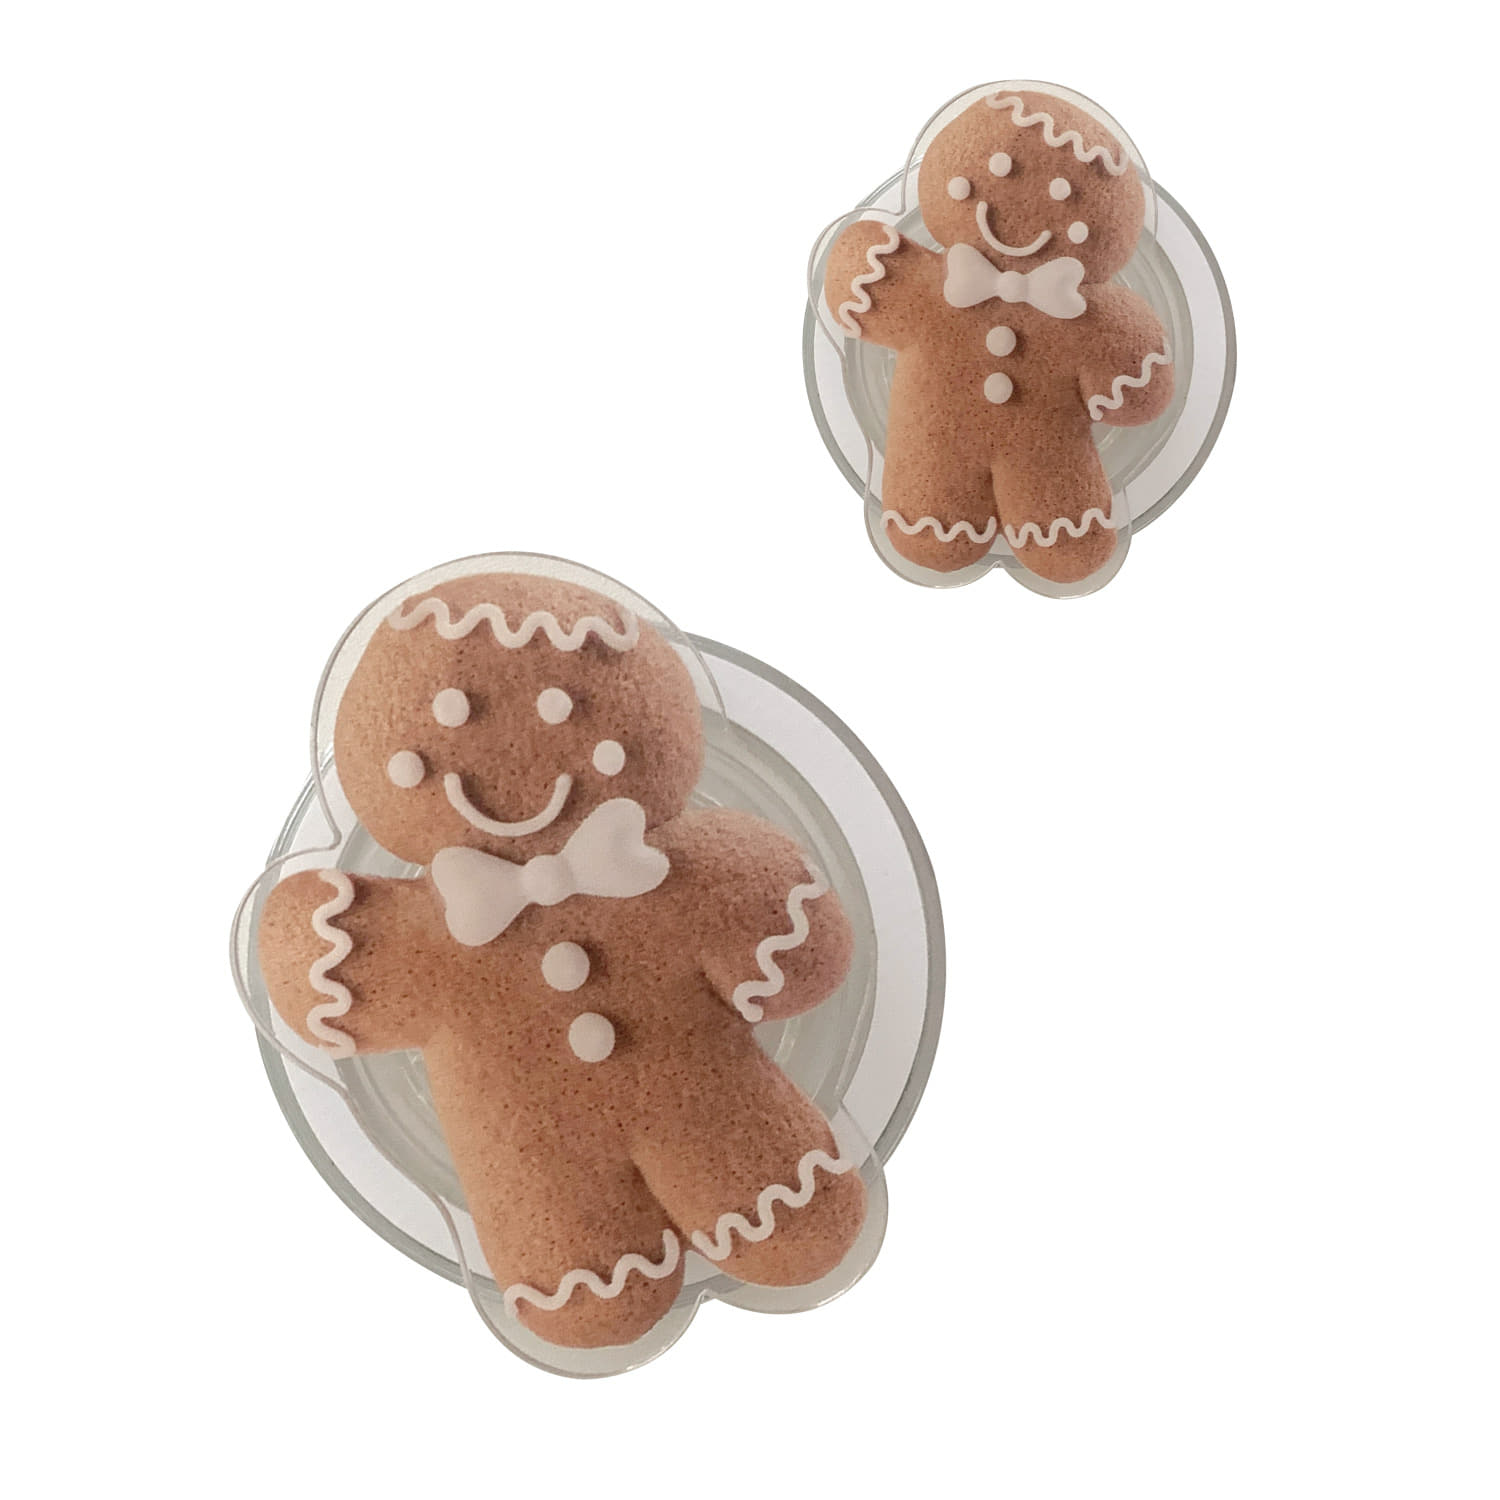 [Acrylic tok] gingerman cookie acrylic tok